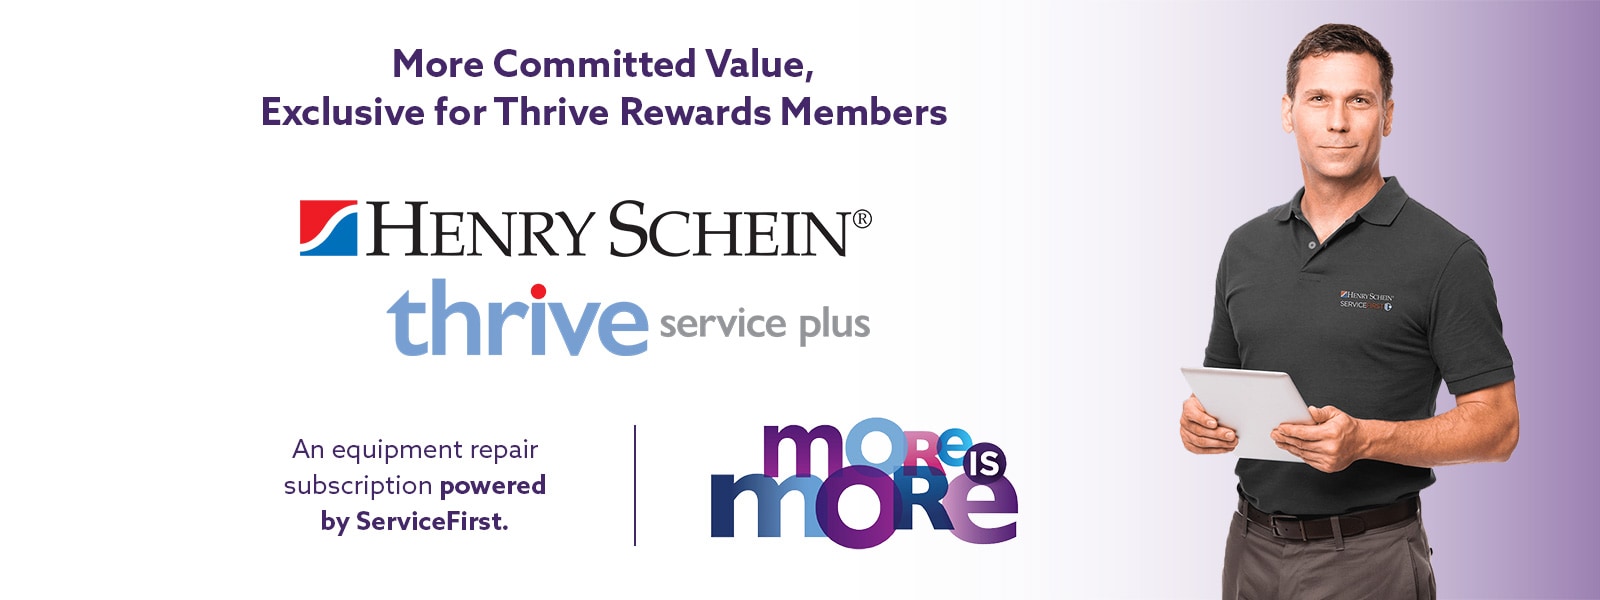 Henry Schein Thrive Service Plus